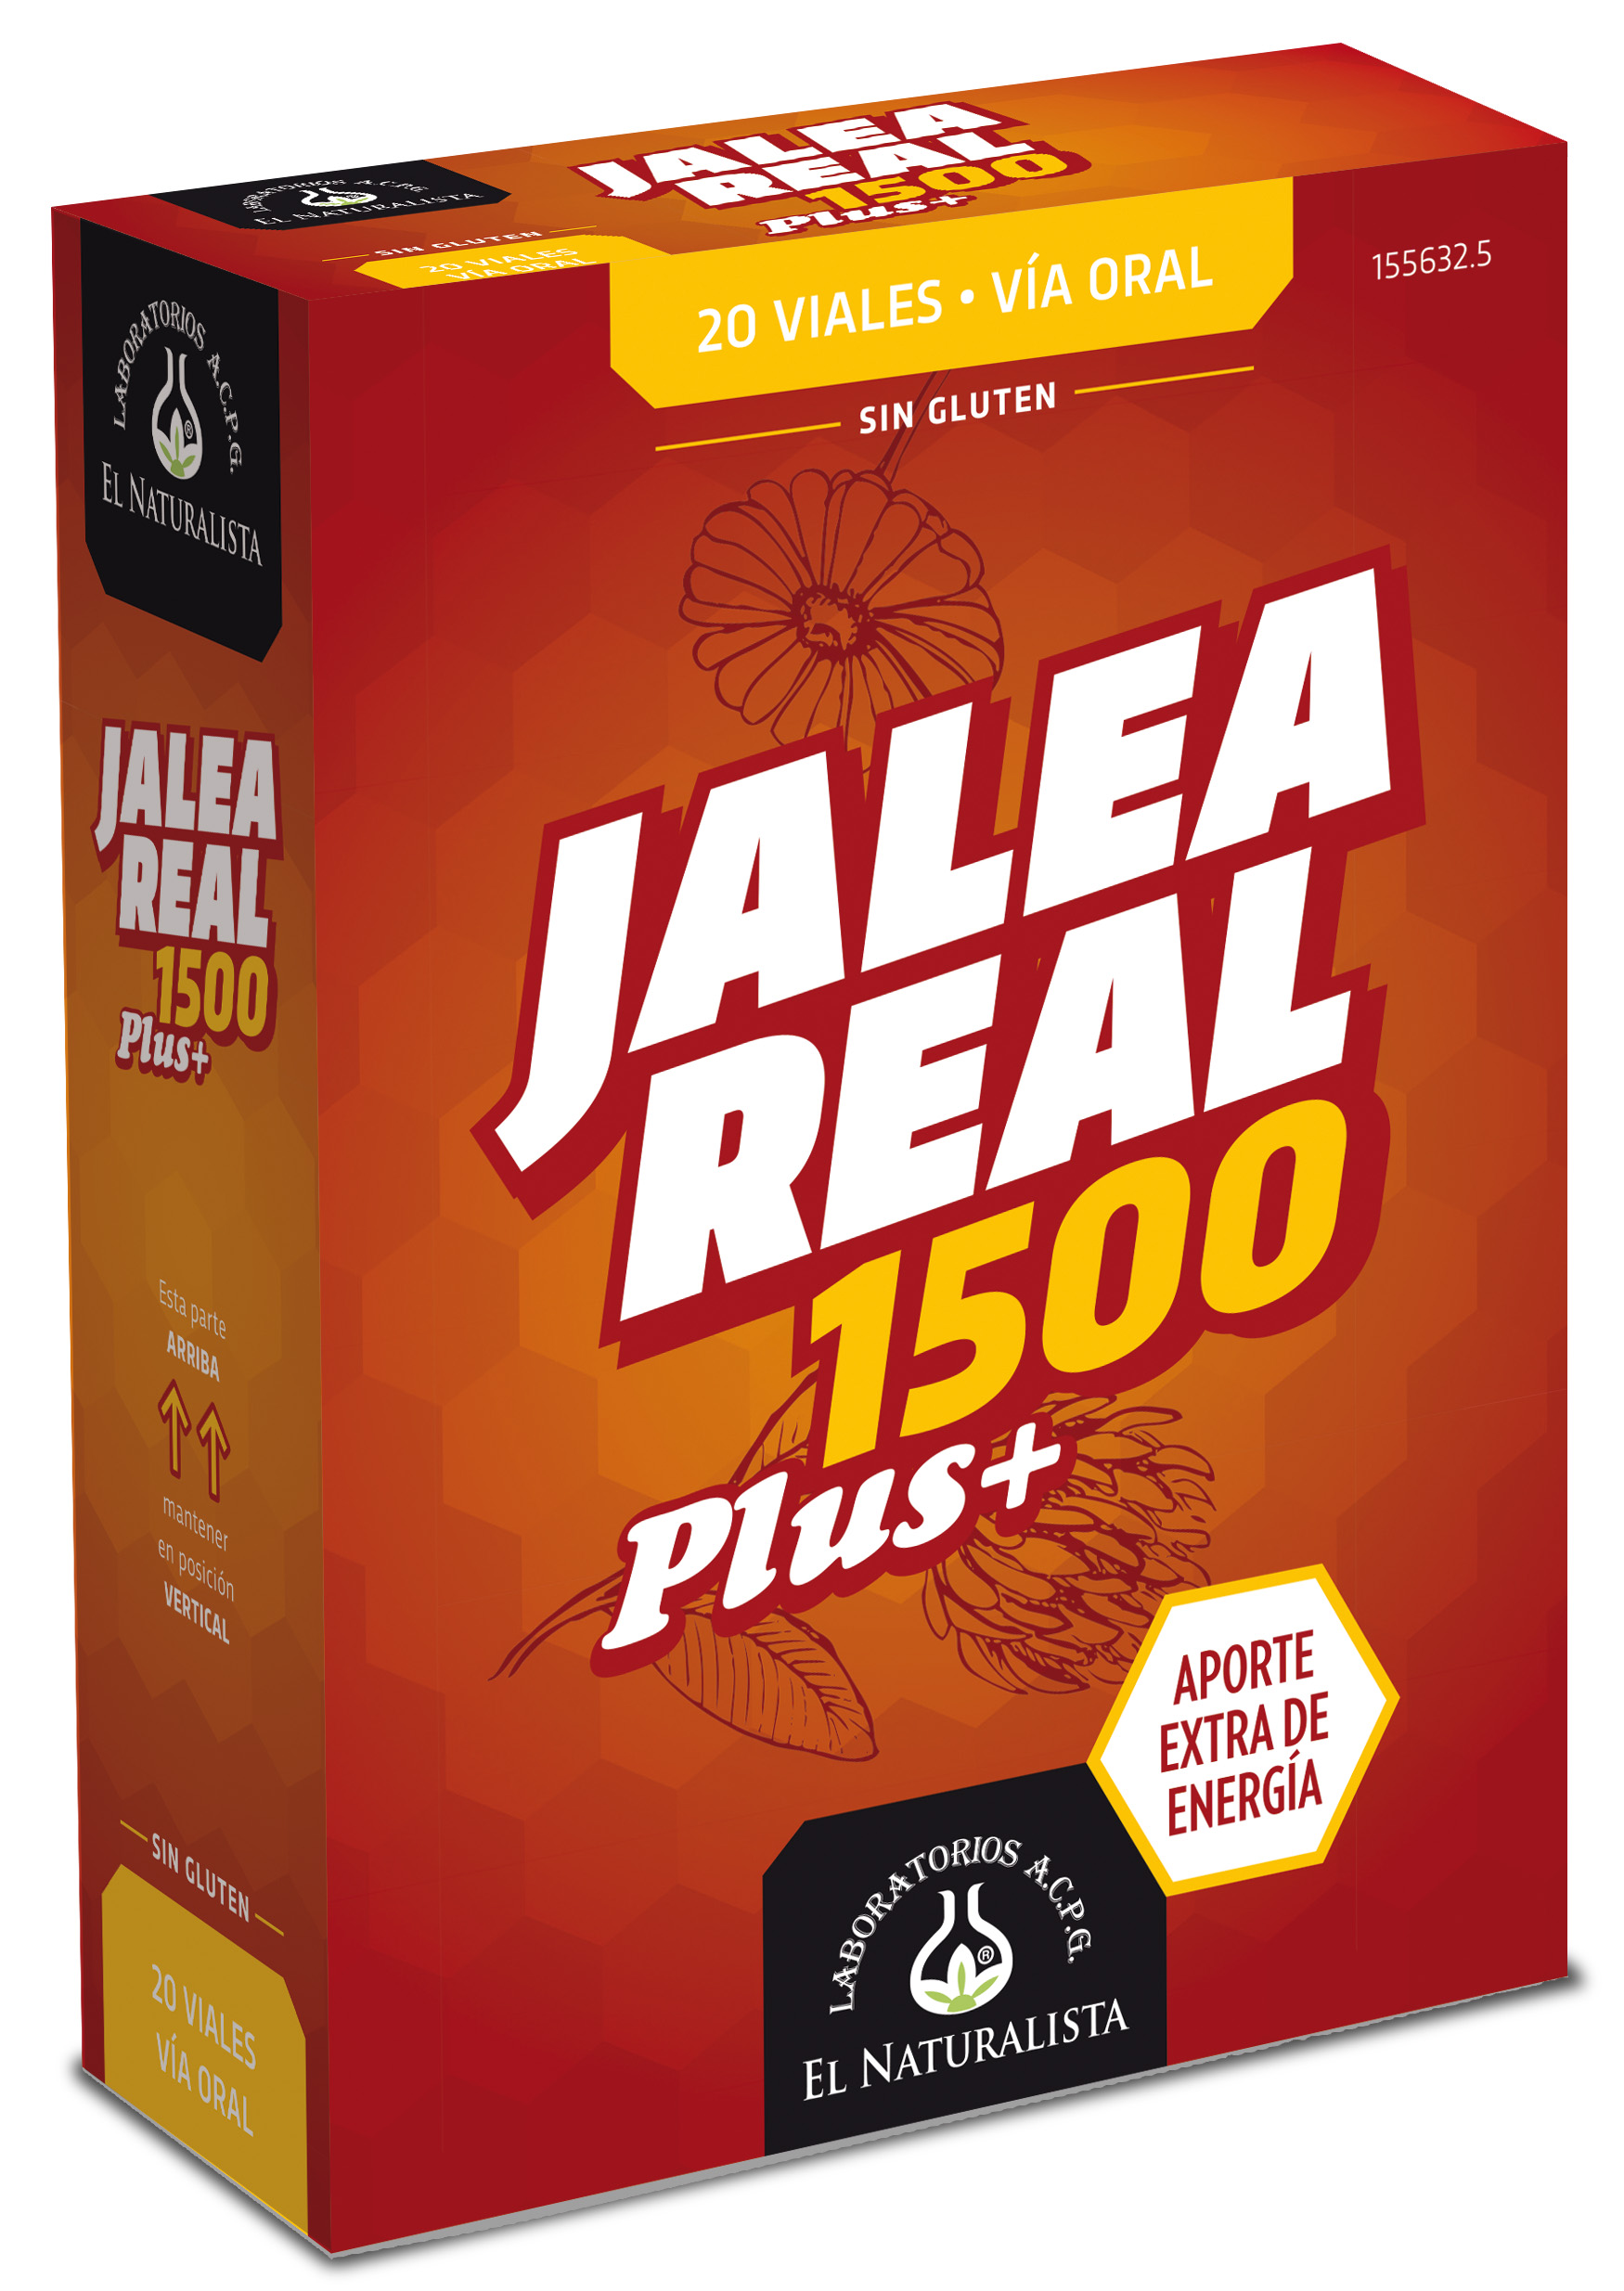 Jalea Real 1500 20 viales